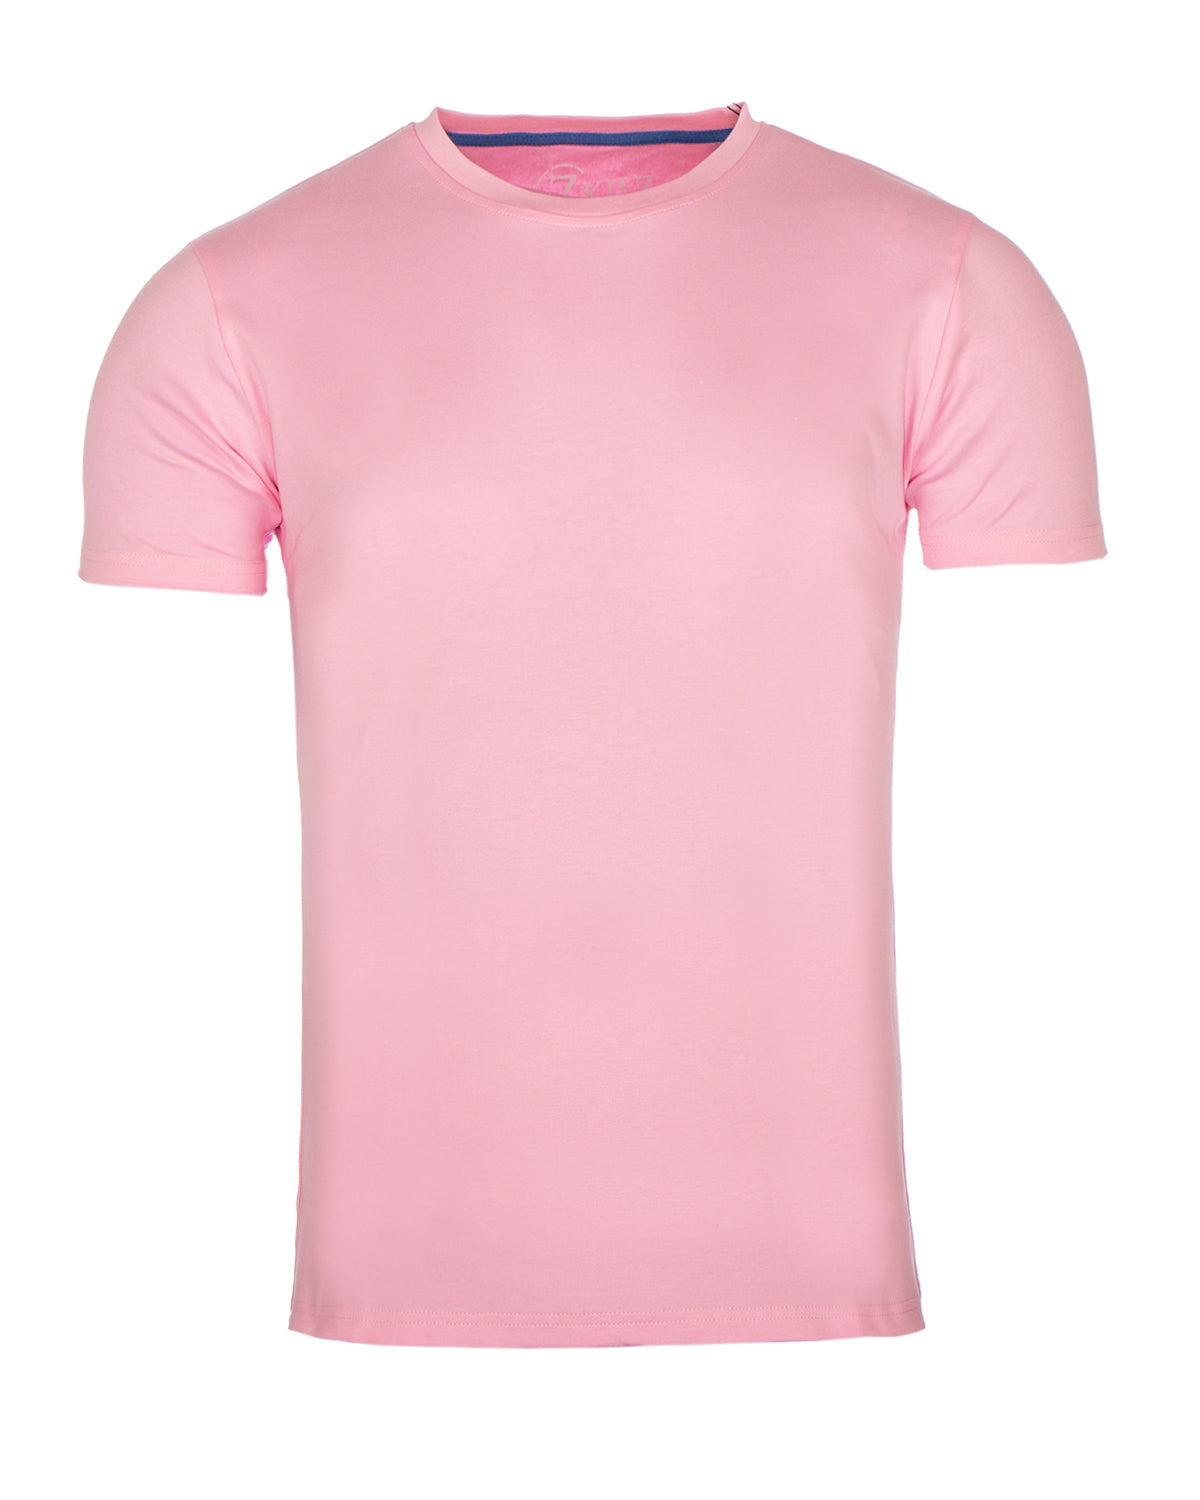 Zkilz Eco Clothing Luomupuuvilla t-paita - Vaaleanpunainen